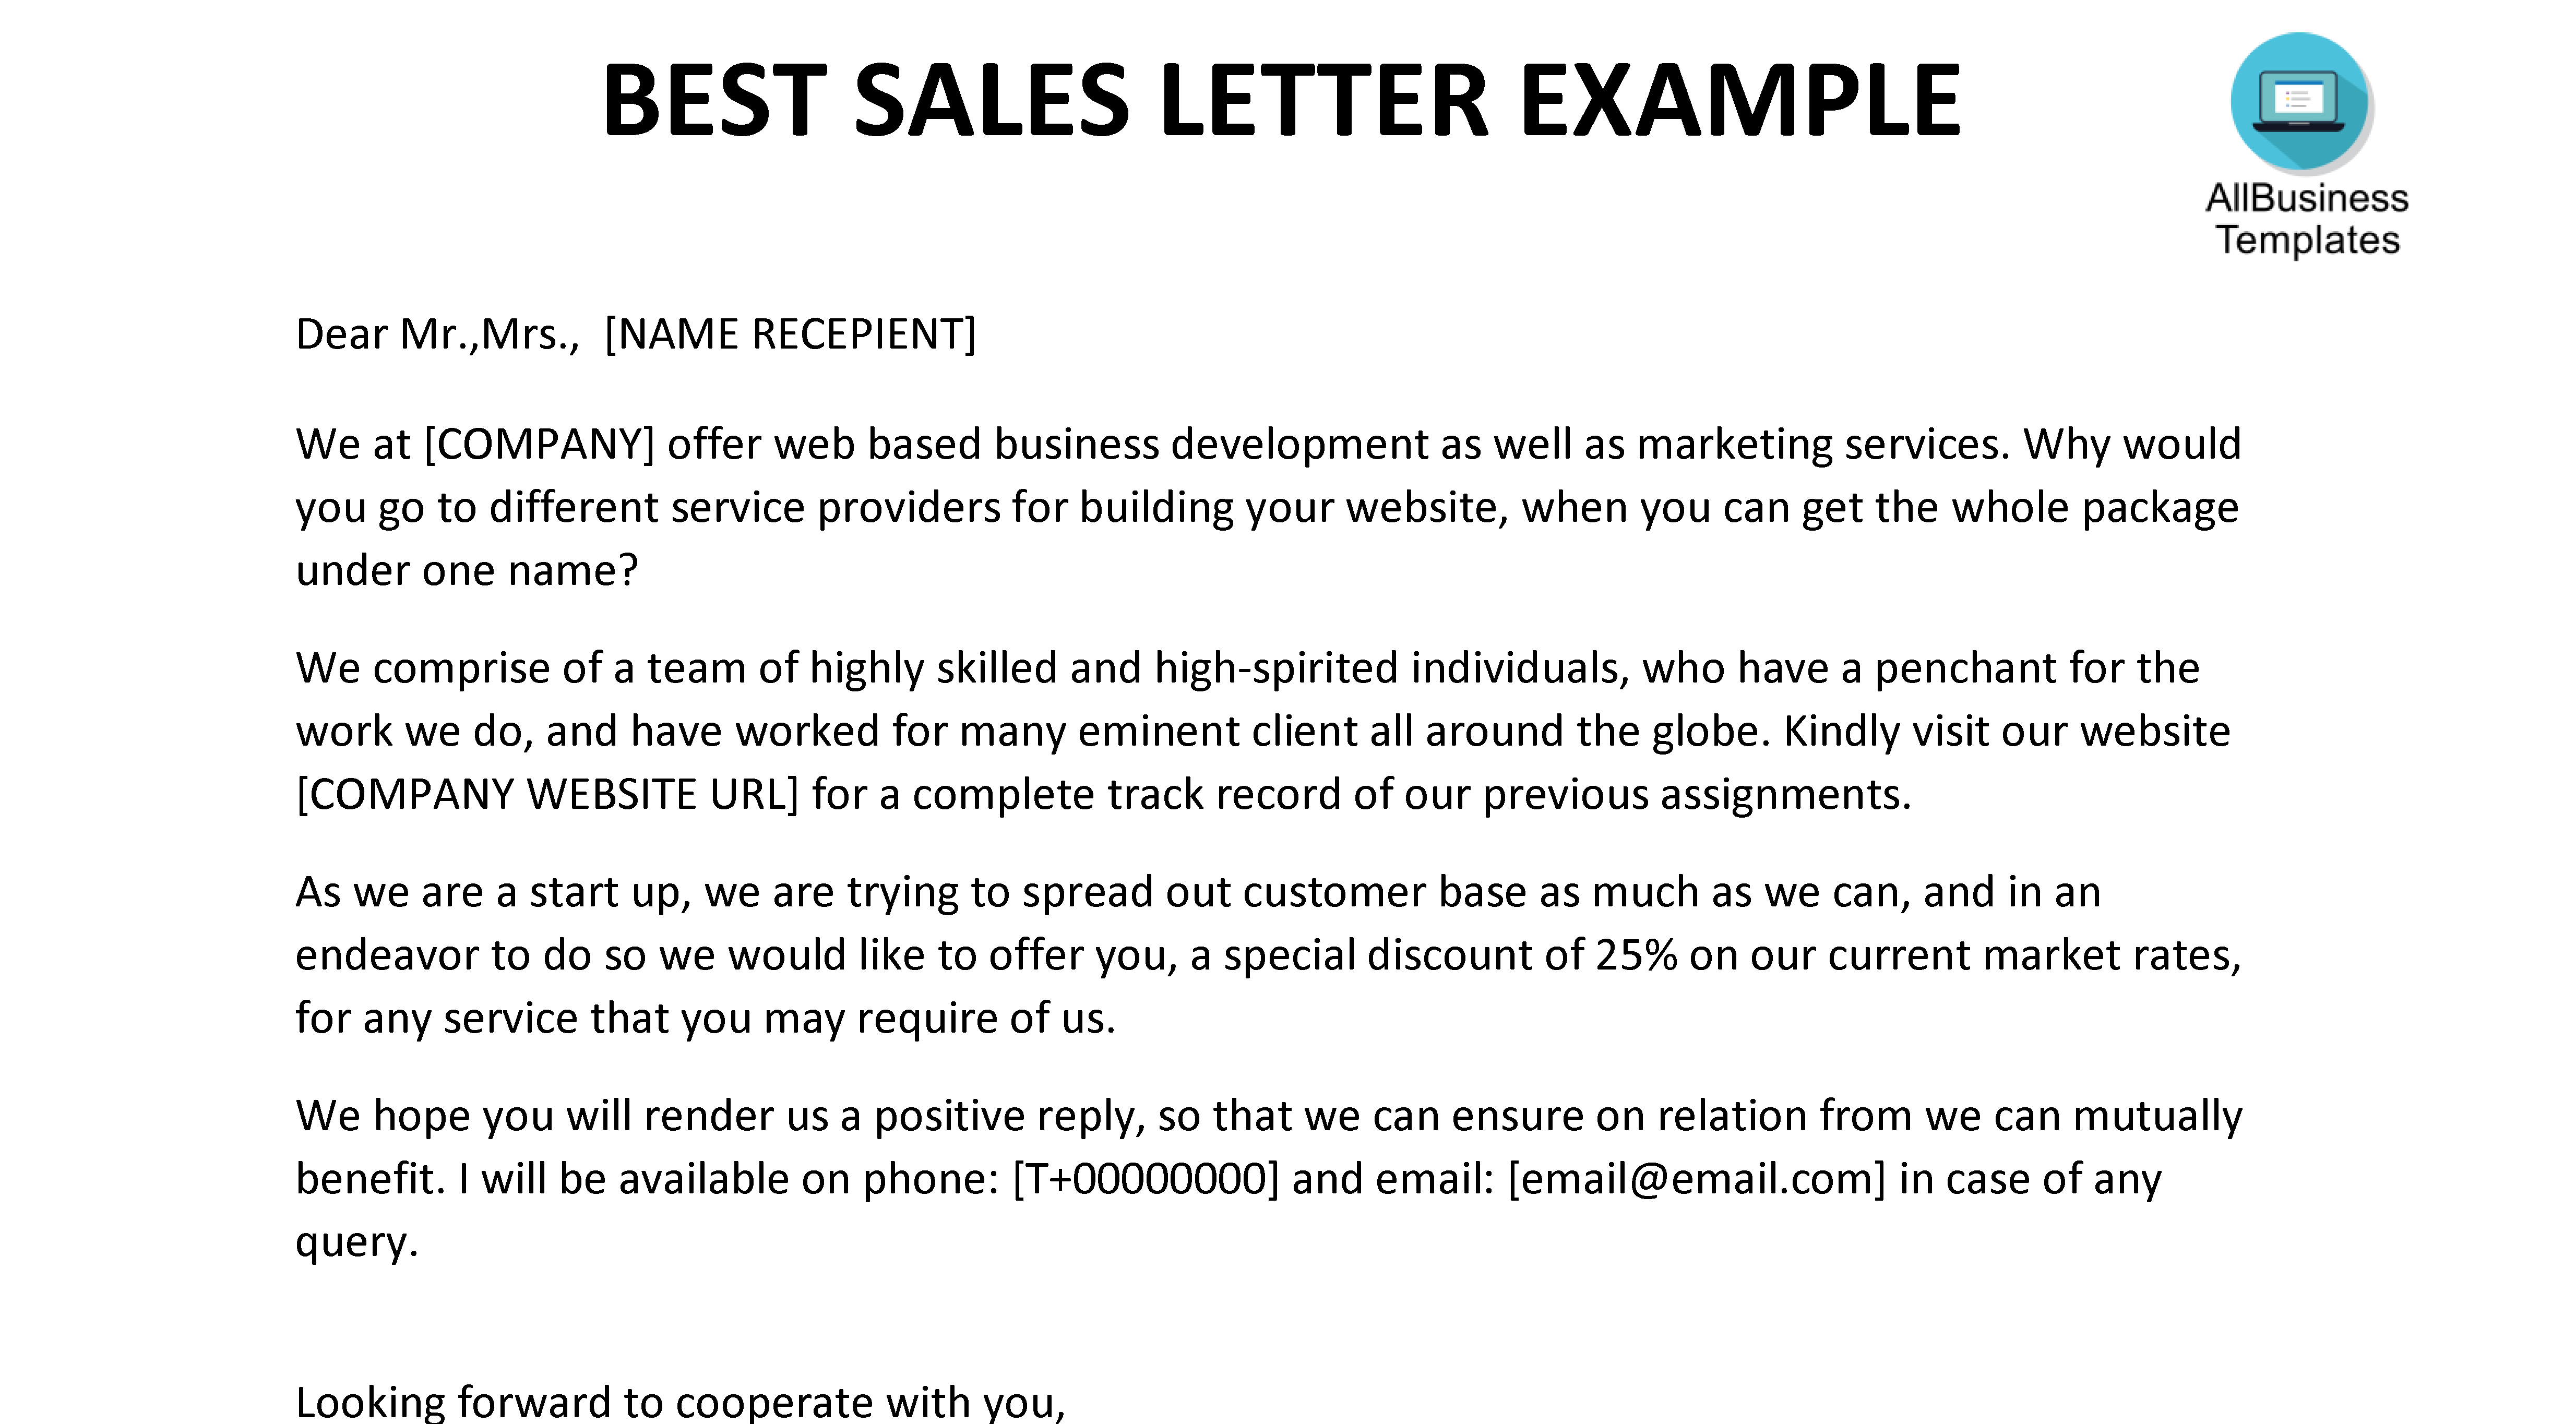 sales letter example plantilla imagen principal